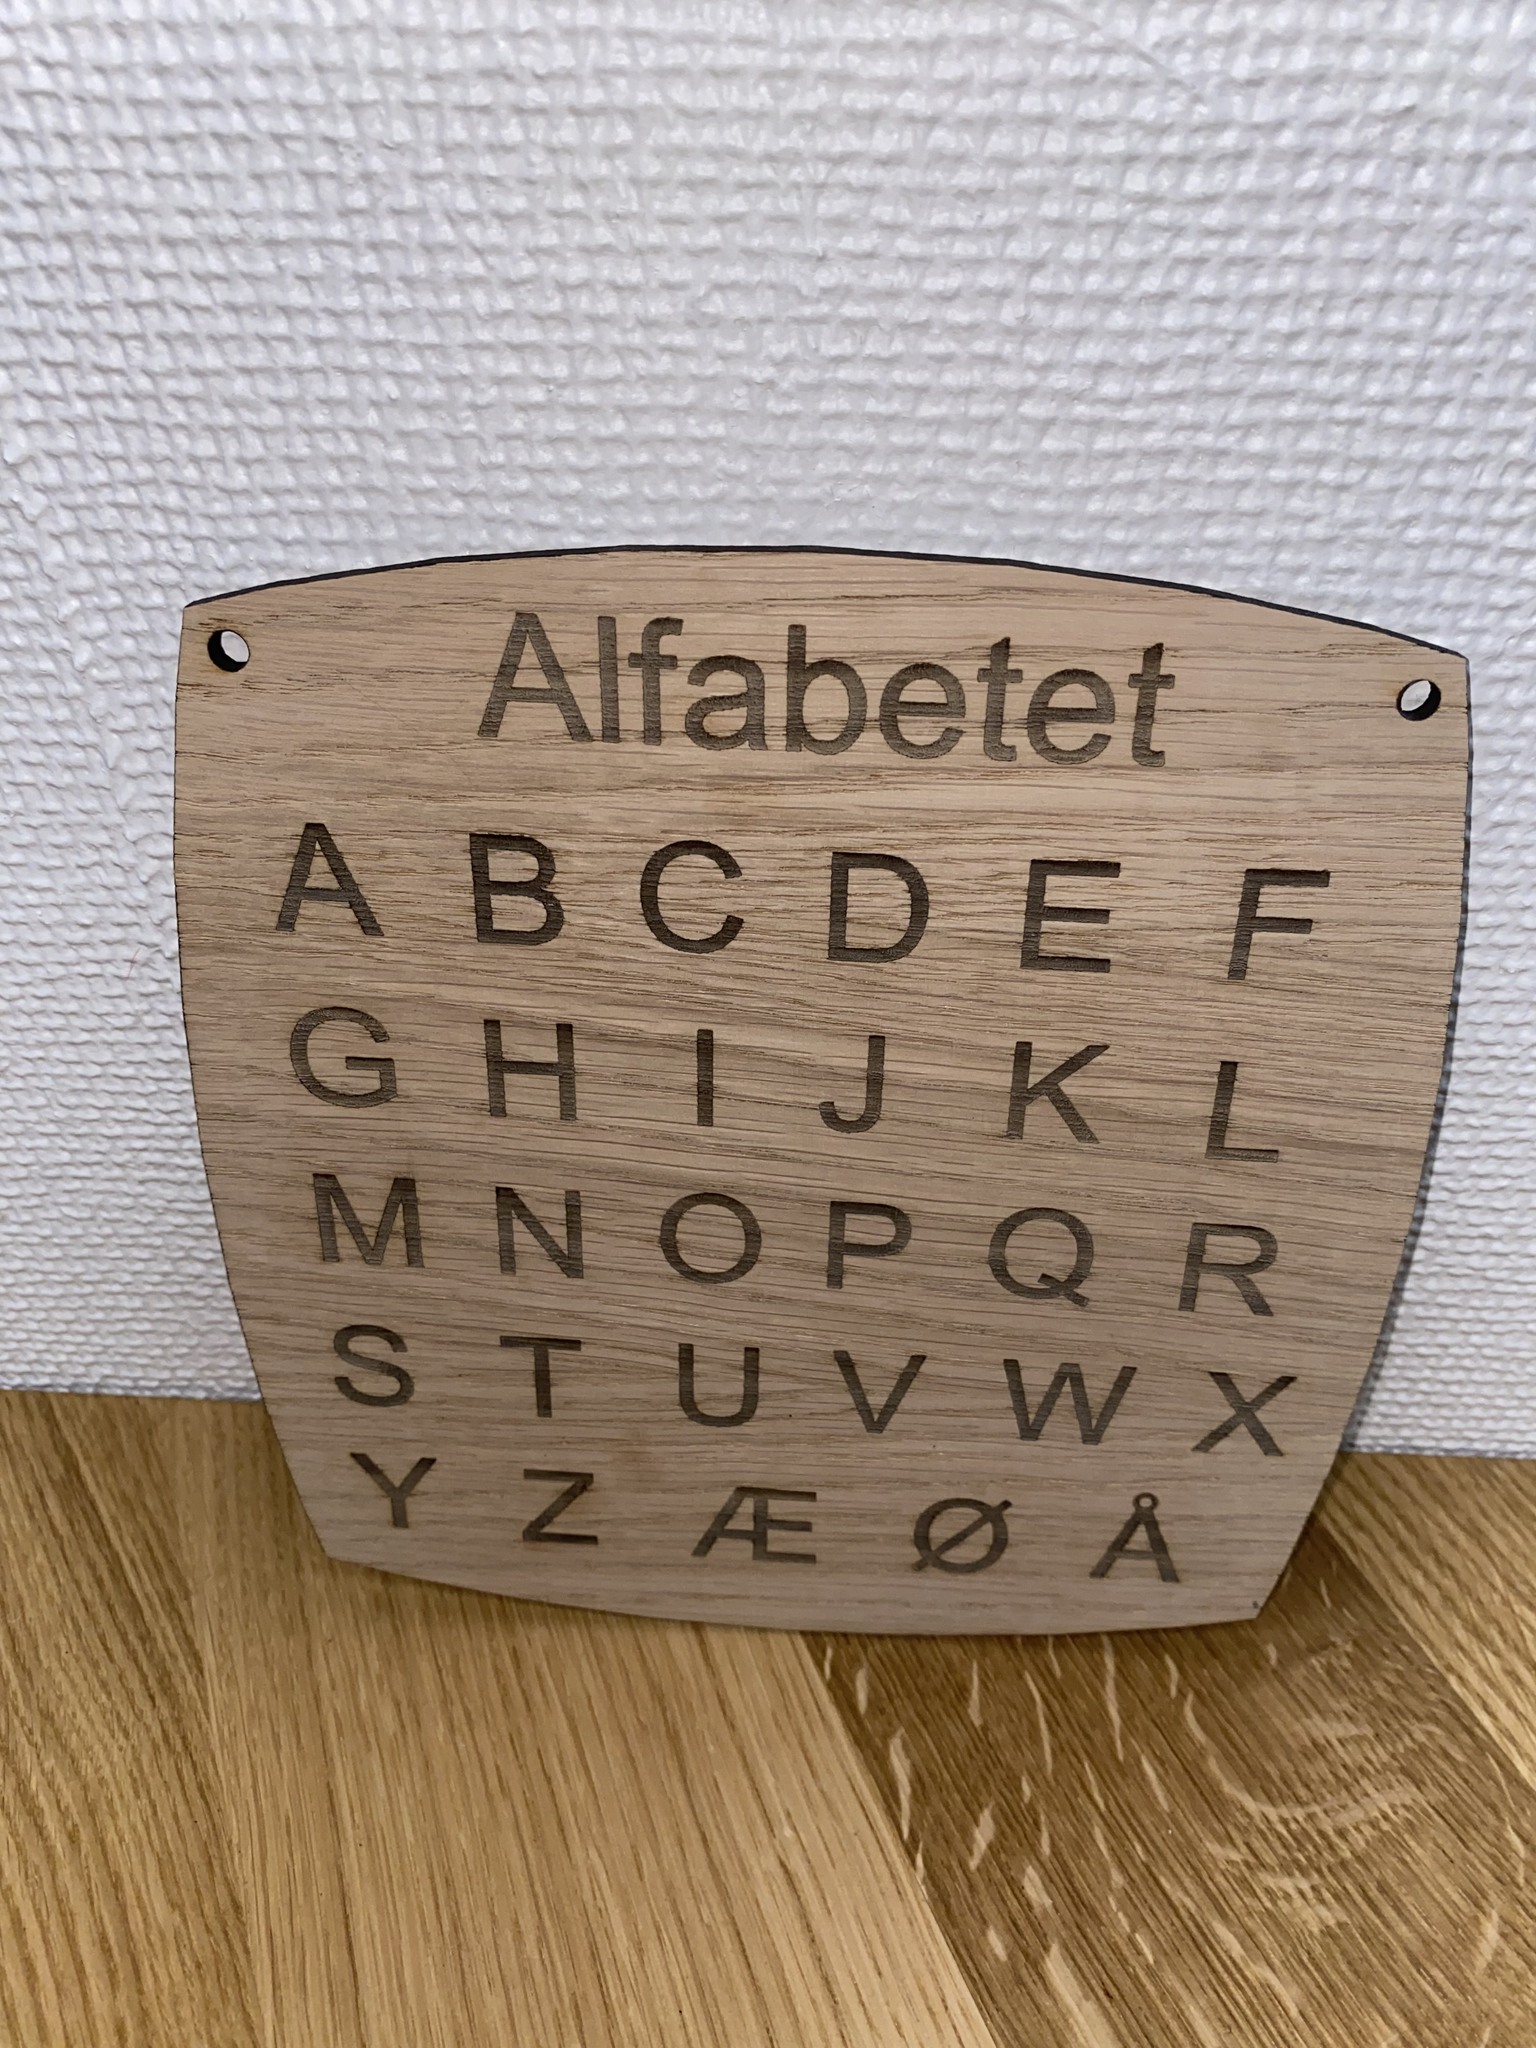 alfabetet